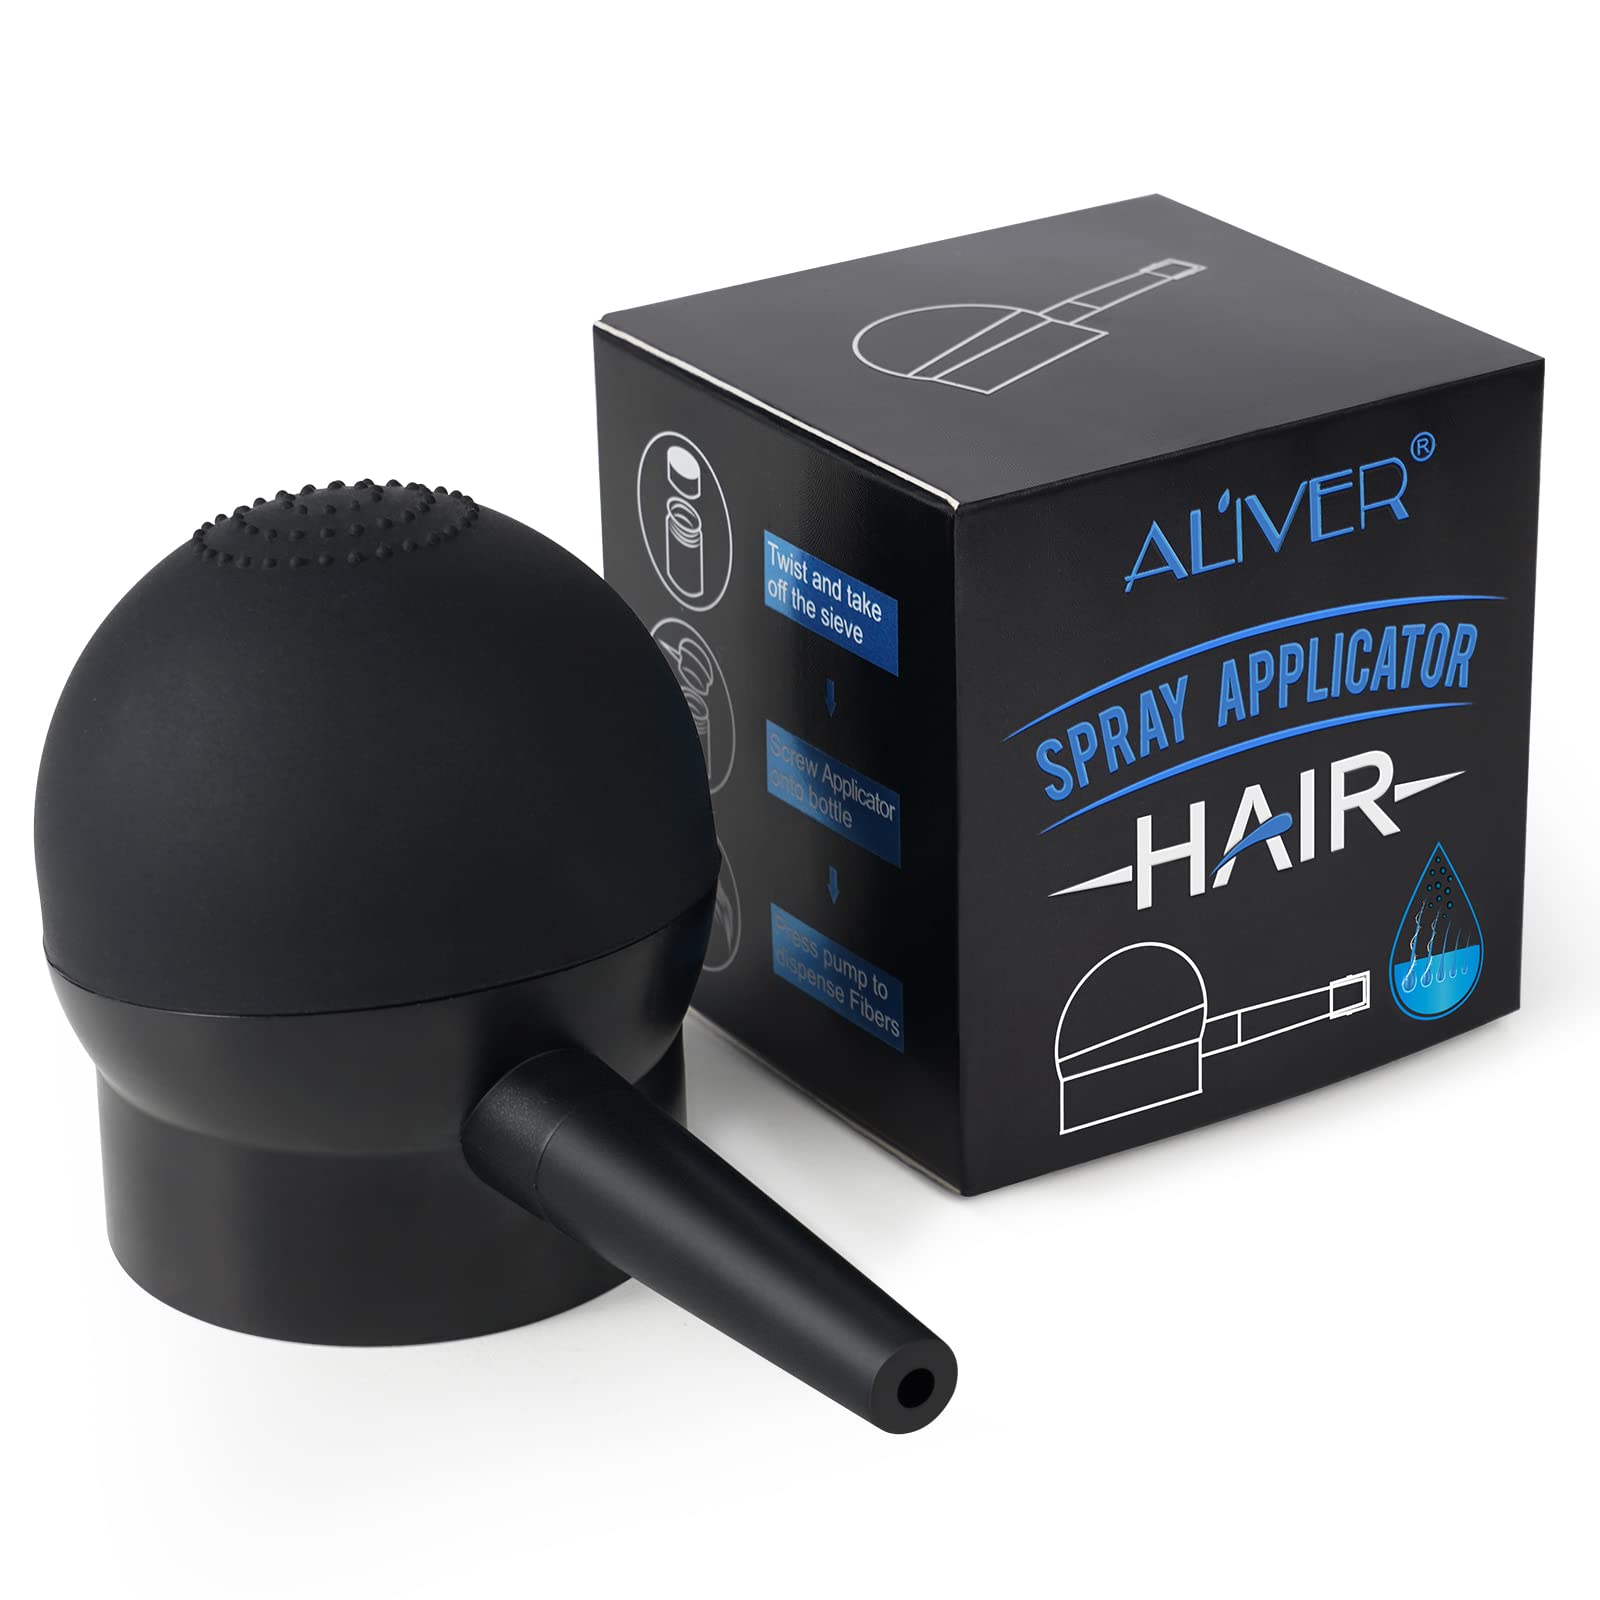 Looking for airbrush hair fibers? Use an N'hance™ Application Pump